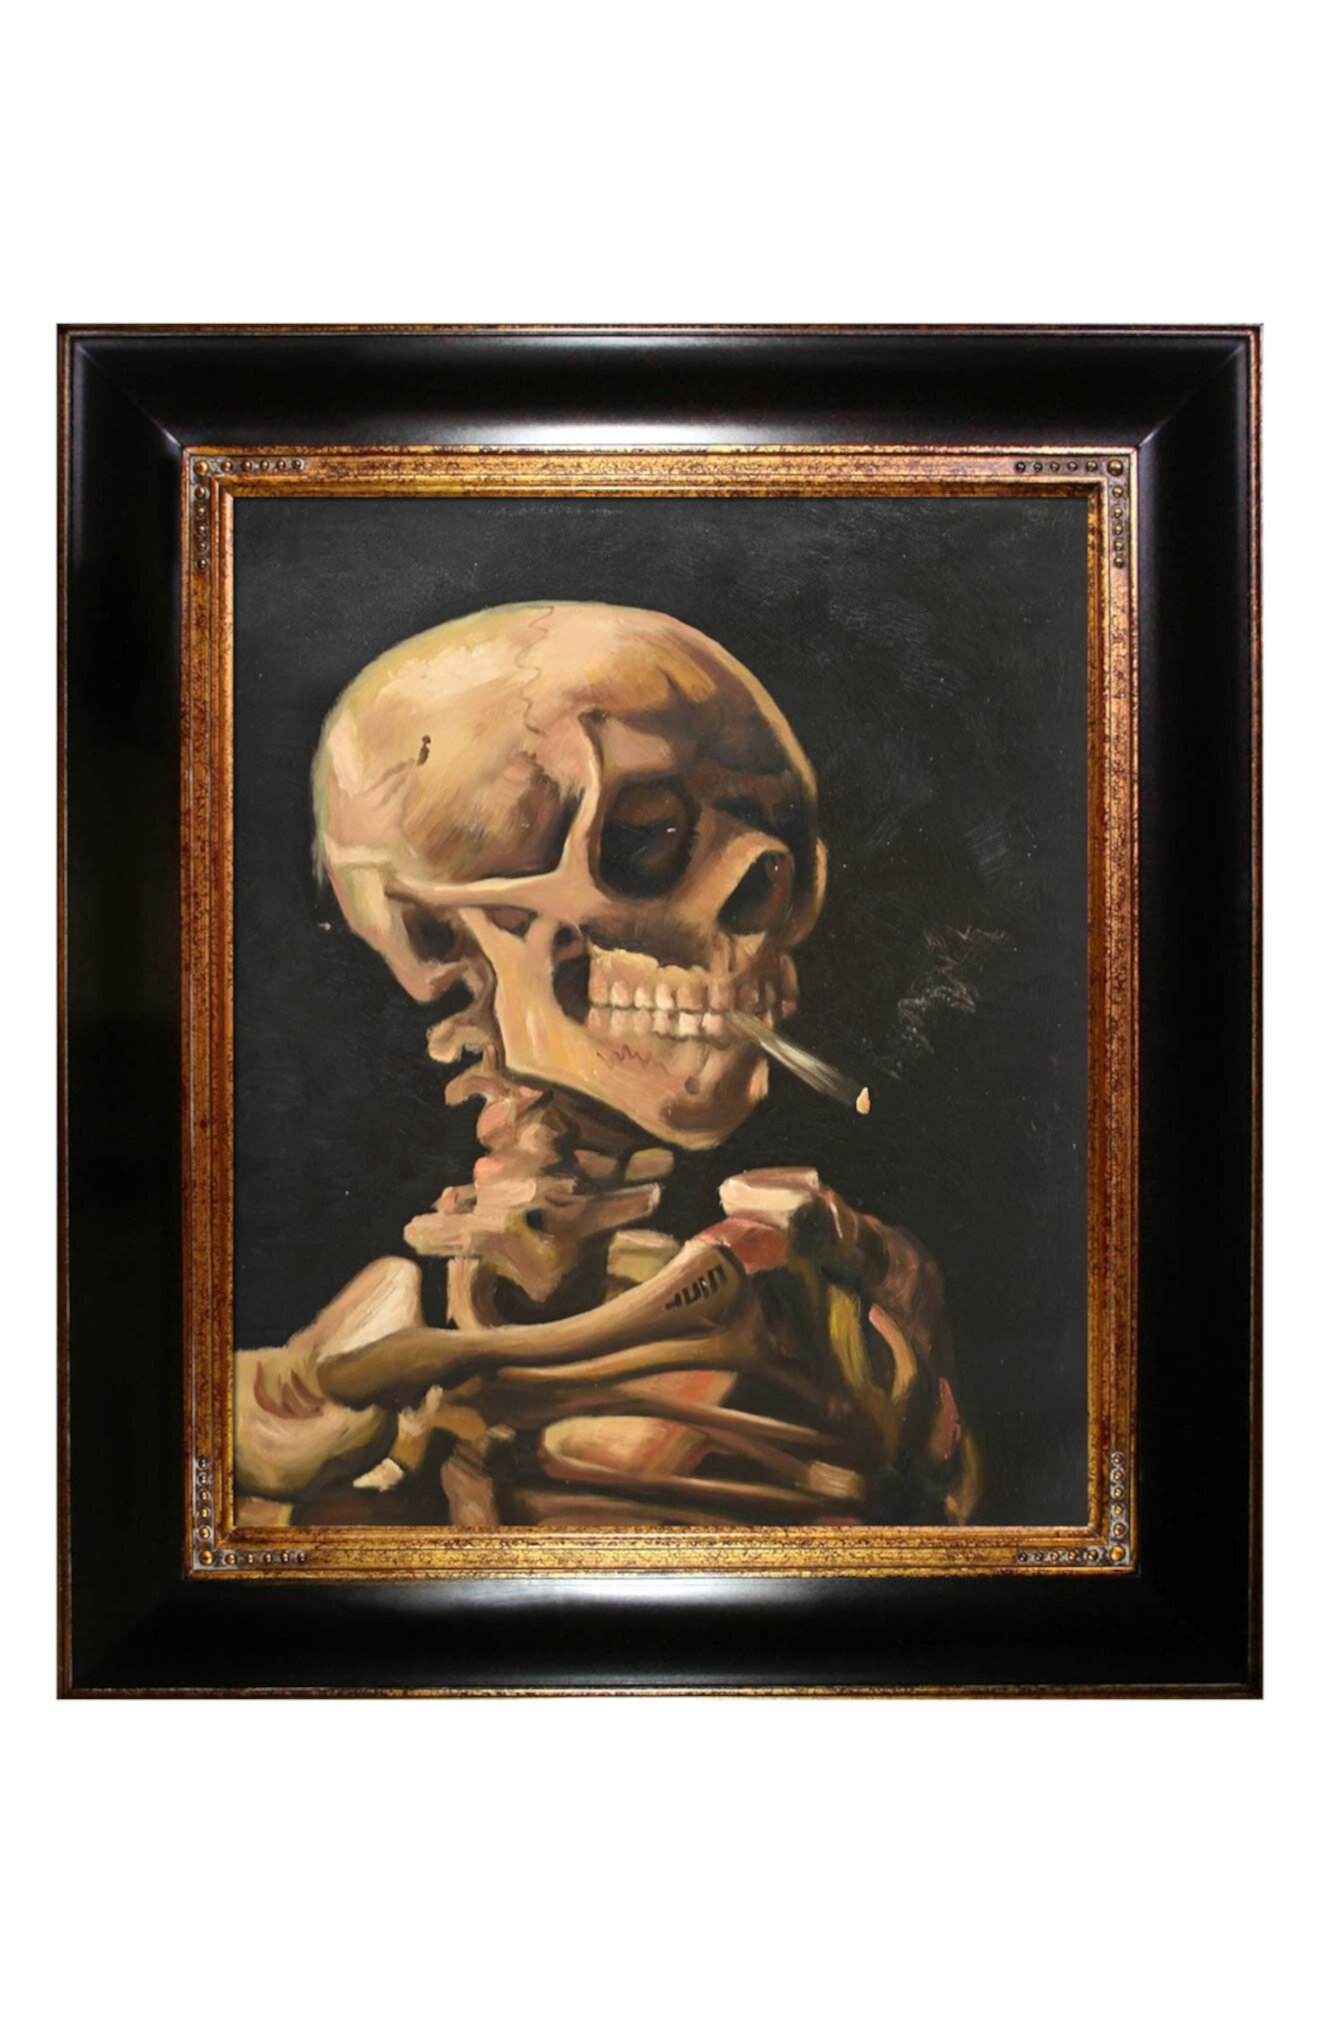 Заказать Настенные картины Череп скелета с горящей сигаретой Ван Гога,  ручная роспись маслом, репродукция стены, 29 x 33 дюйма OVERSTOCK ART, цвет  - многоцветный, по цене 49 460 рублей на маркетплейсе Usmall.ru